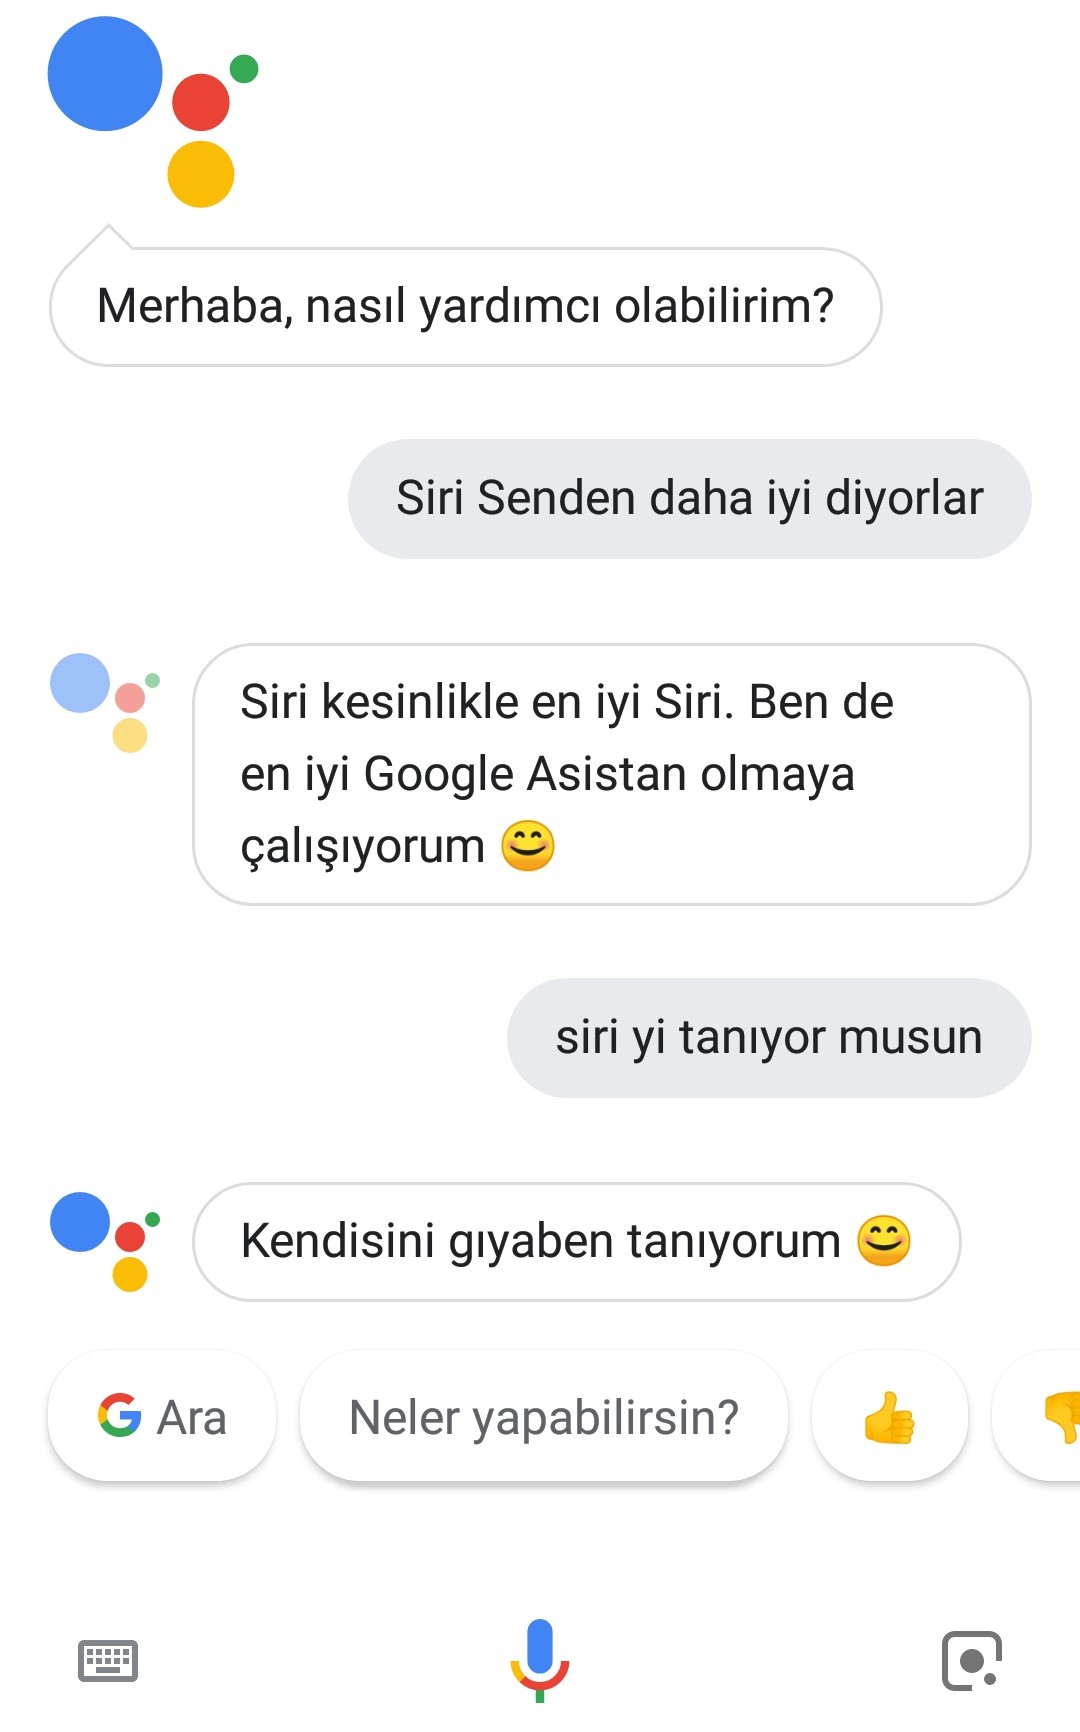 Türkçe Google Asistan ile neler yapılabilecek?